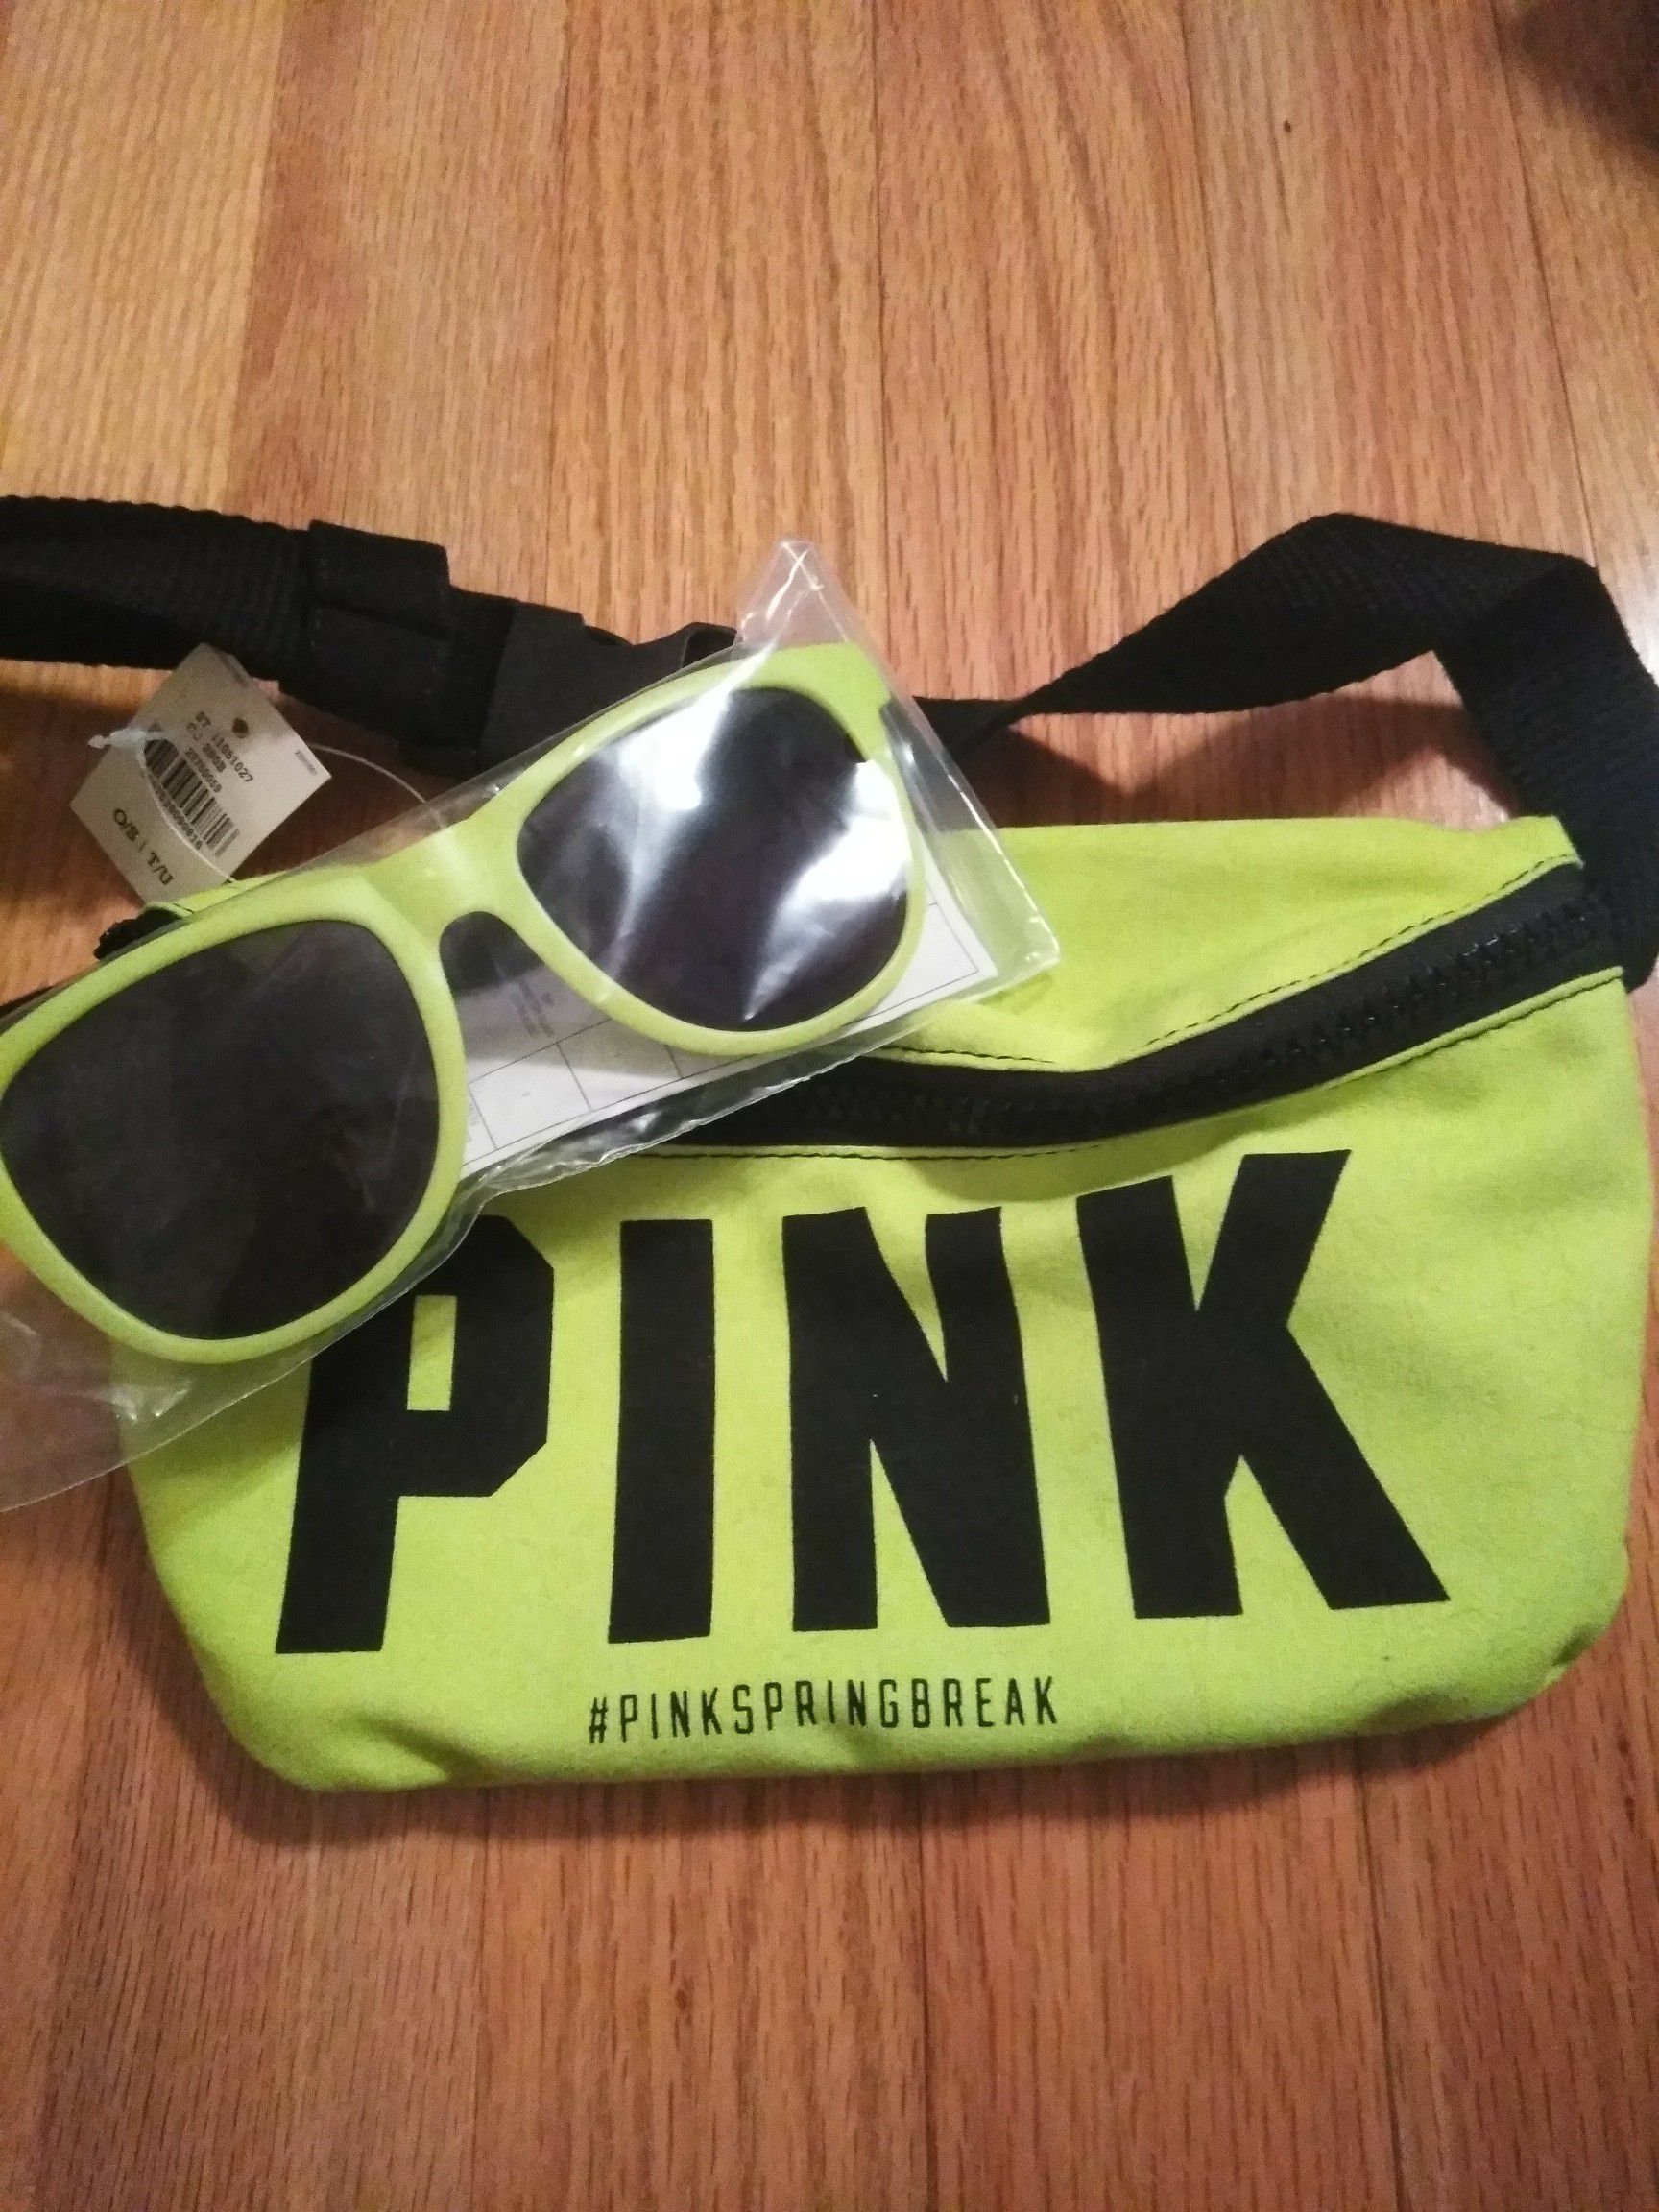 Victoria secret pink sunglasses and a bag